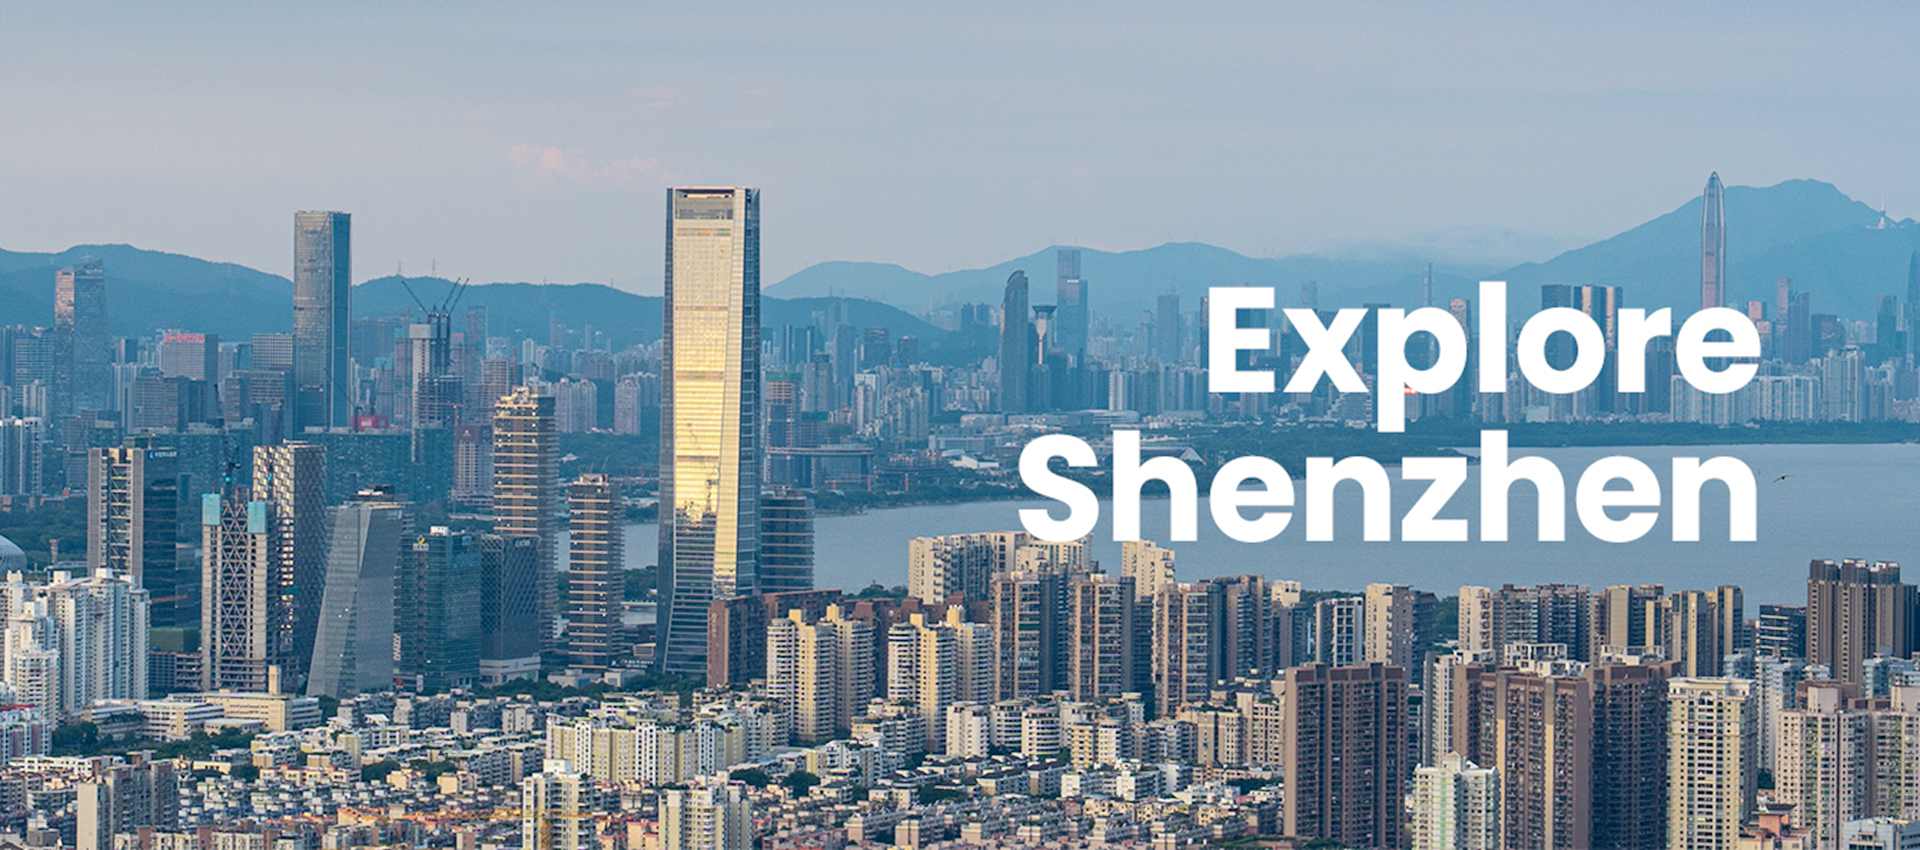 Explore Shenzhen